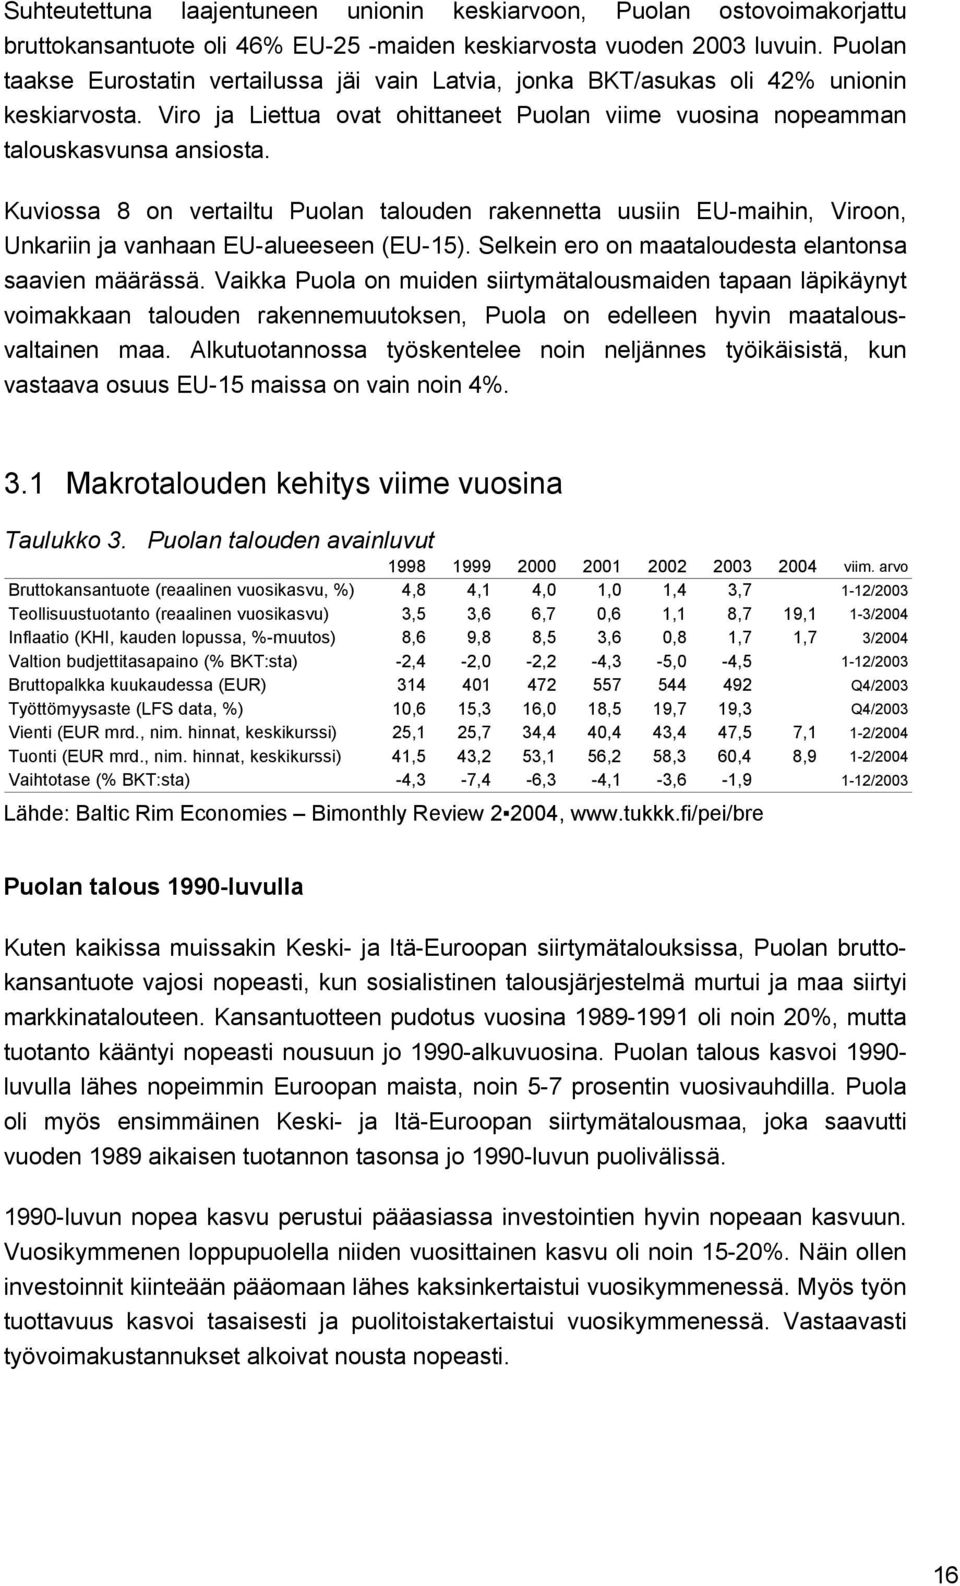 Kuviossa 8 on vertailtu Puolan talouden rakennetta uusiin EU-maihin, Viroon, Unkariin ja vanhaan EU-alueeseen (EU-15). Selkein ero on maataloudesta elantonsa saavien määrässä.